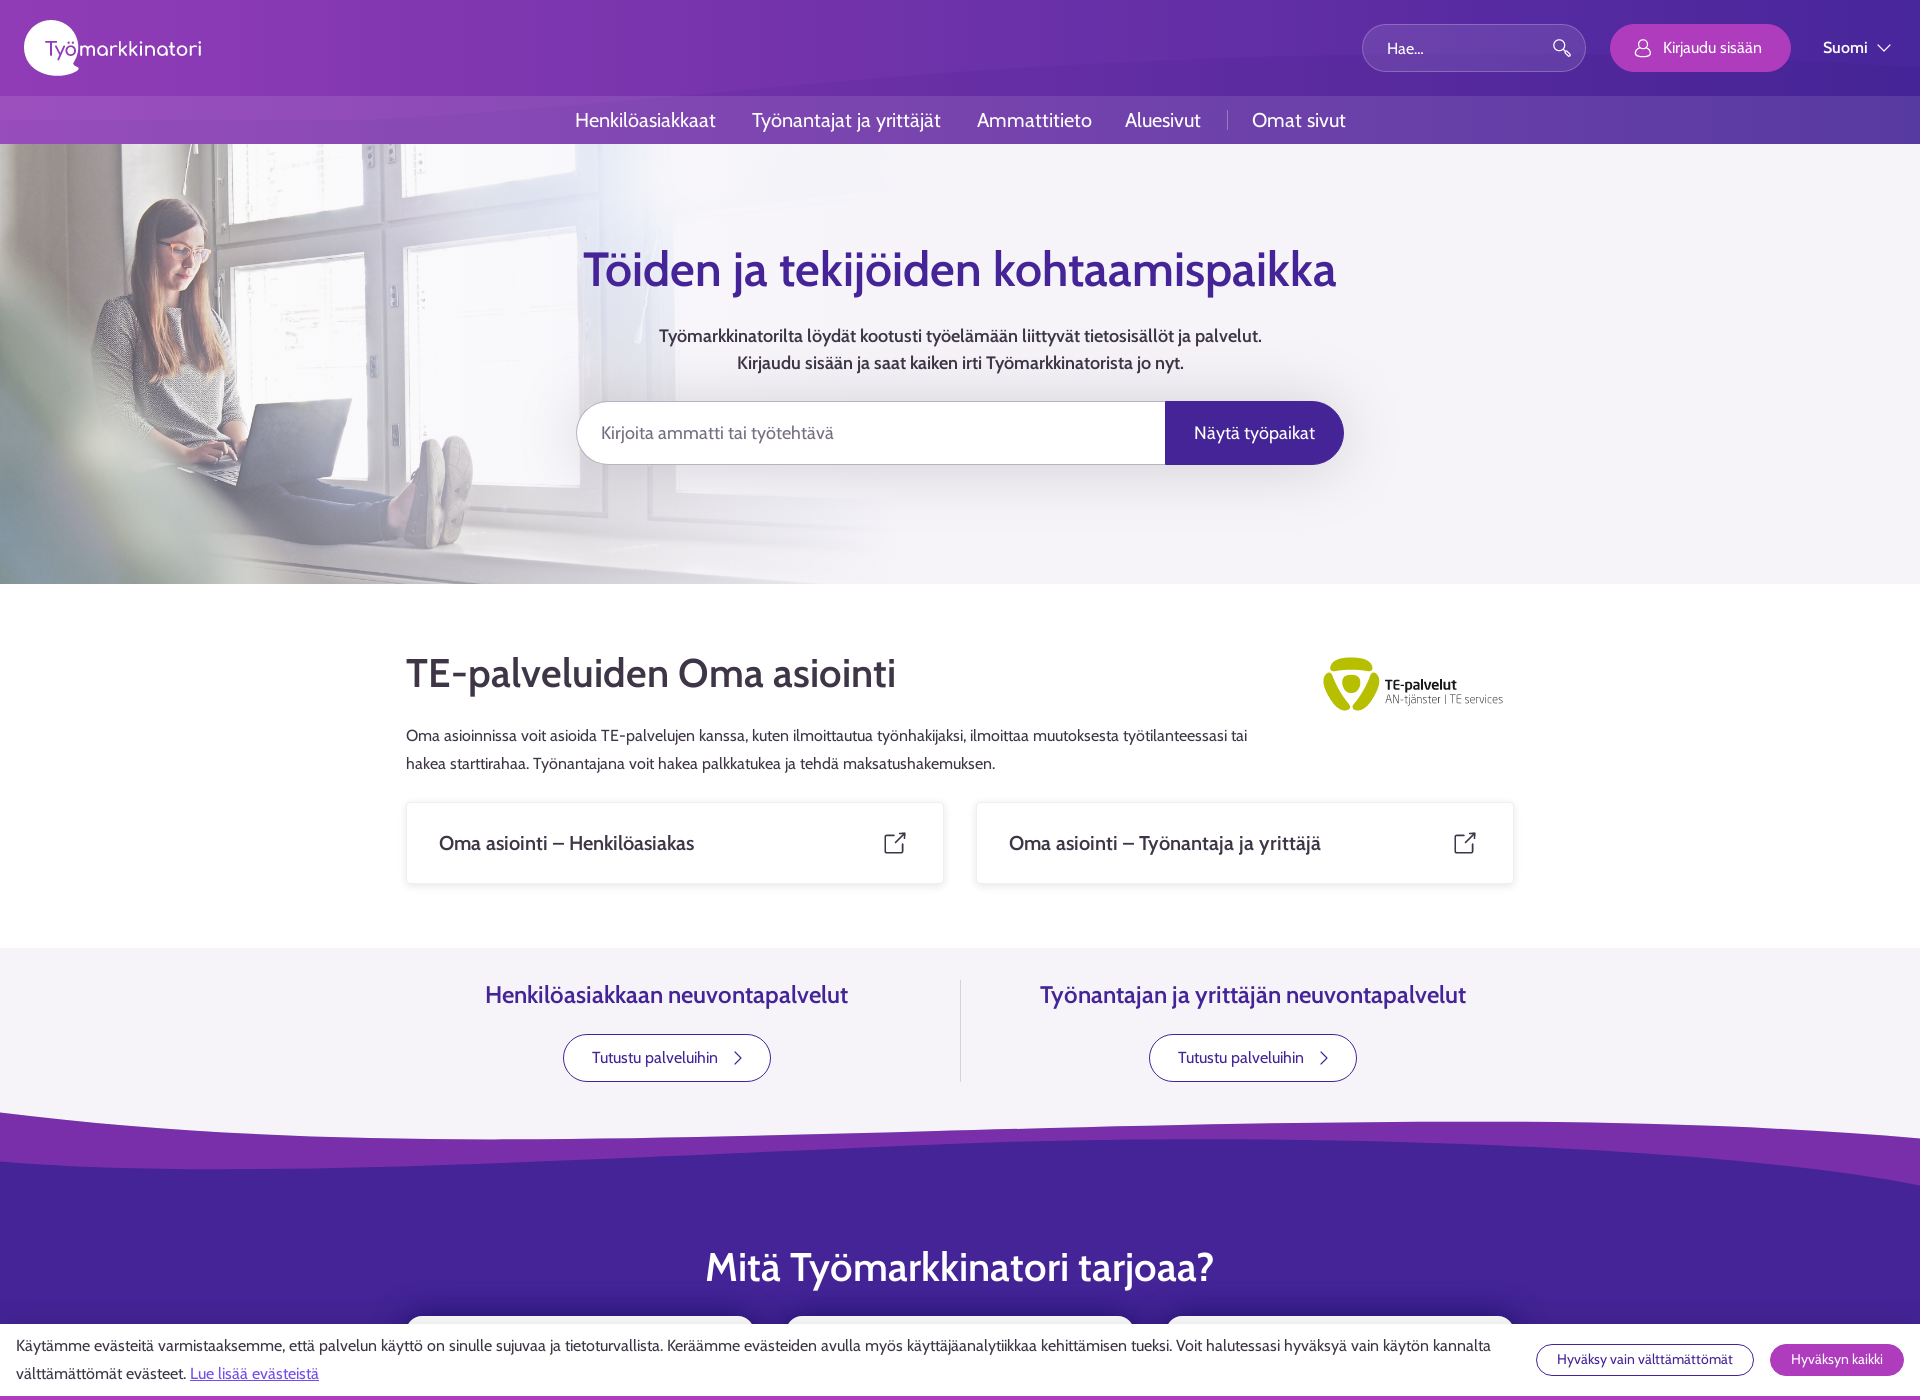 Näyttökuva työmarkkinatori.fi